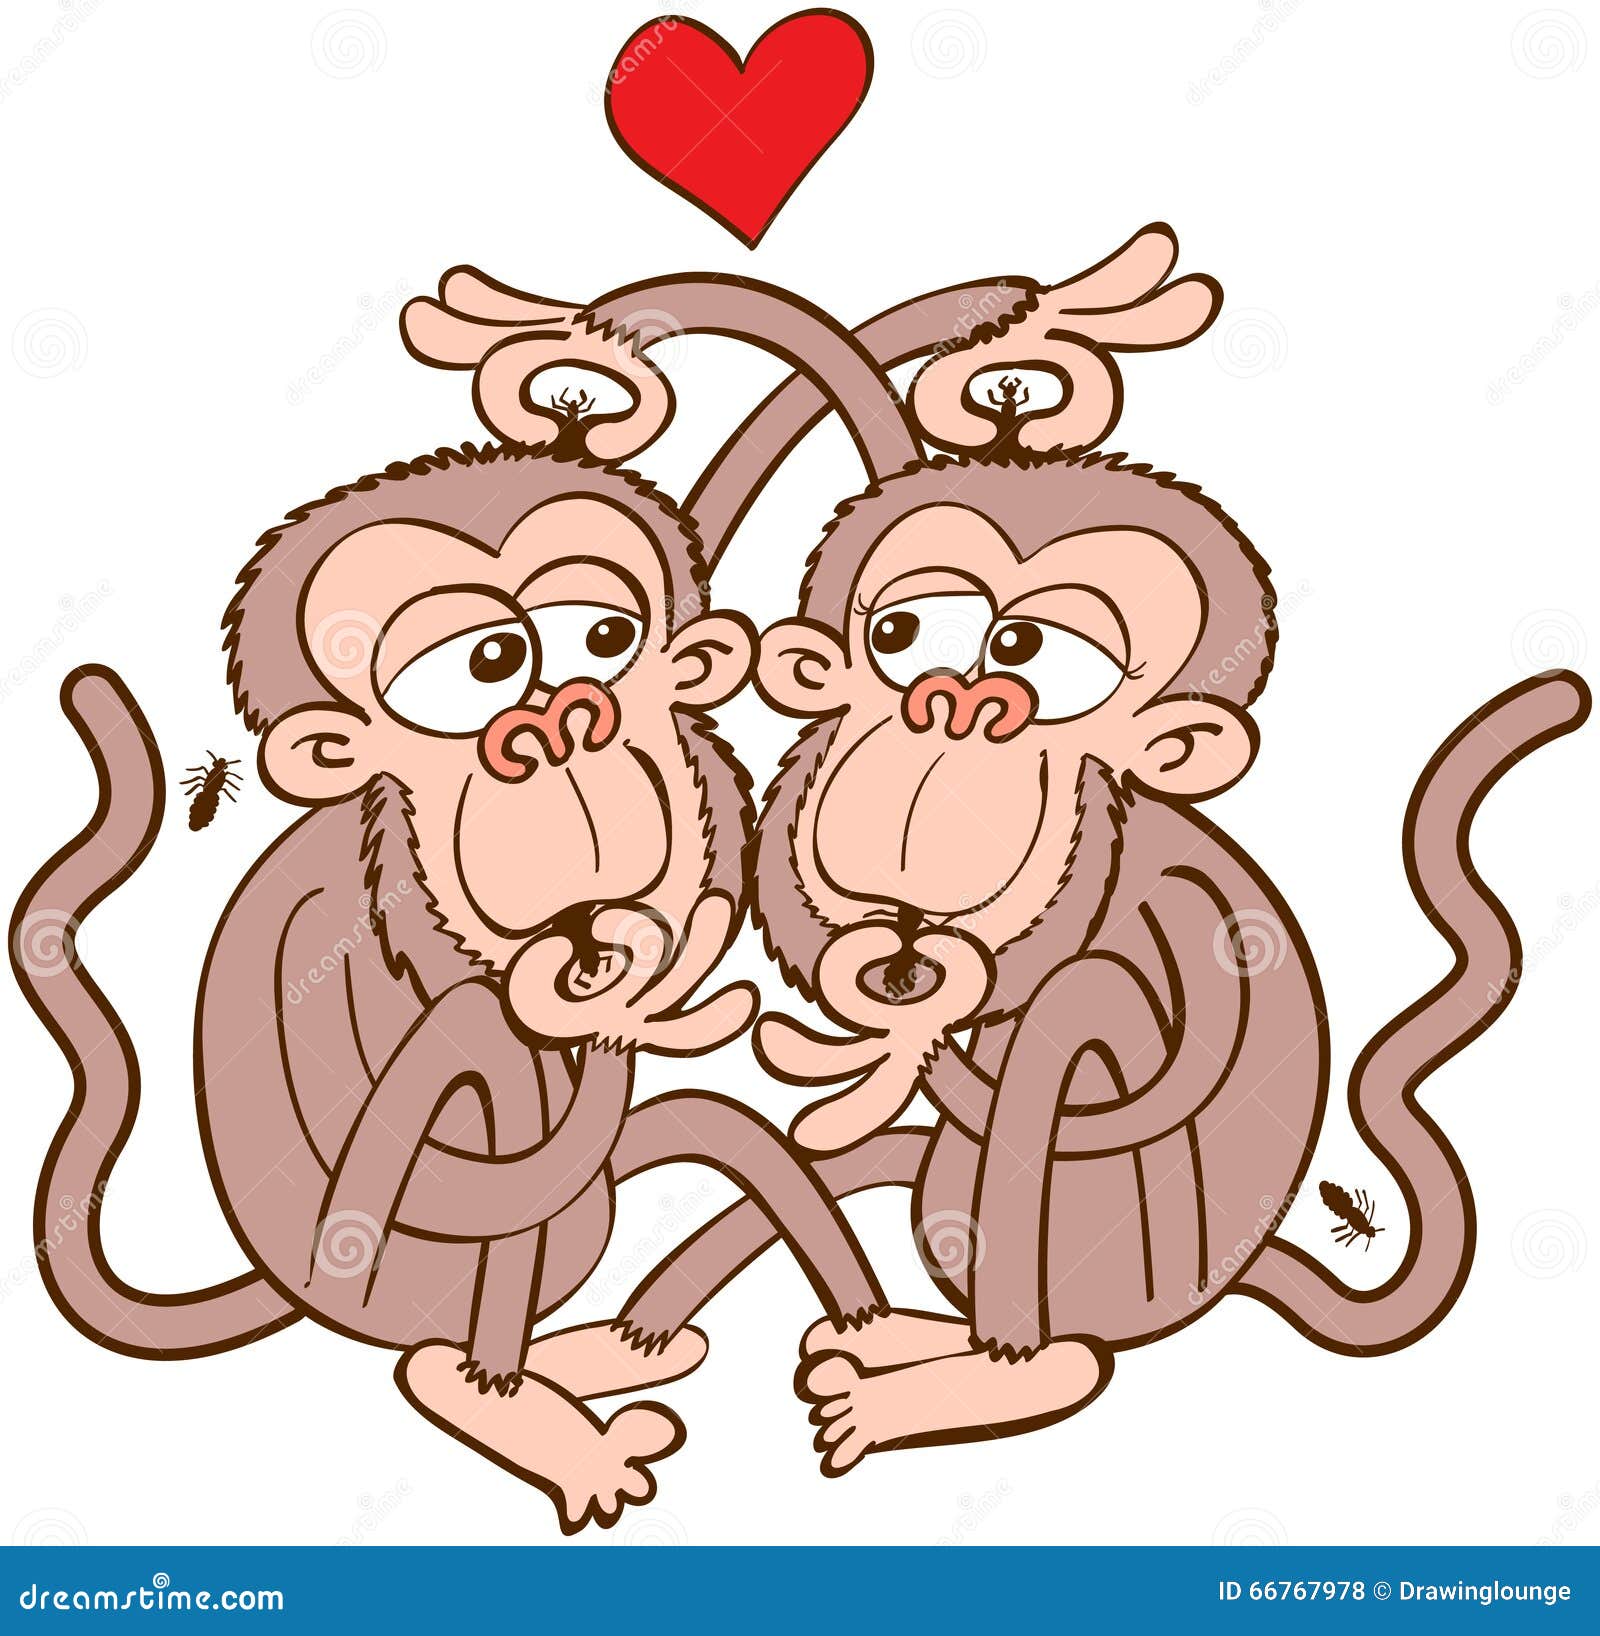 Гороскоп близнец обезьяна. Влюбленные обезьяны. Обезьянки любовь. Влюбленная обезьянка. 2 Влюбленные обезьяны.